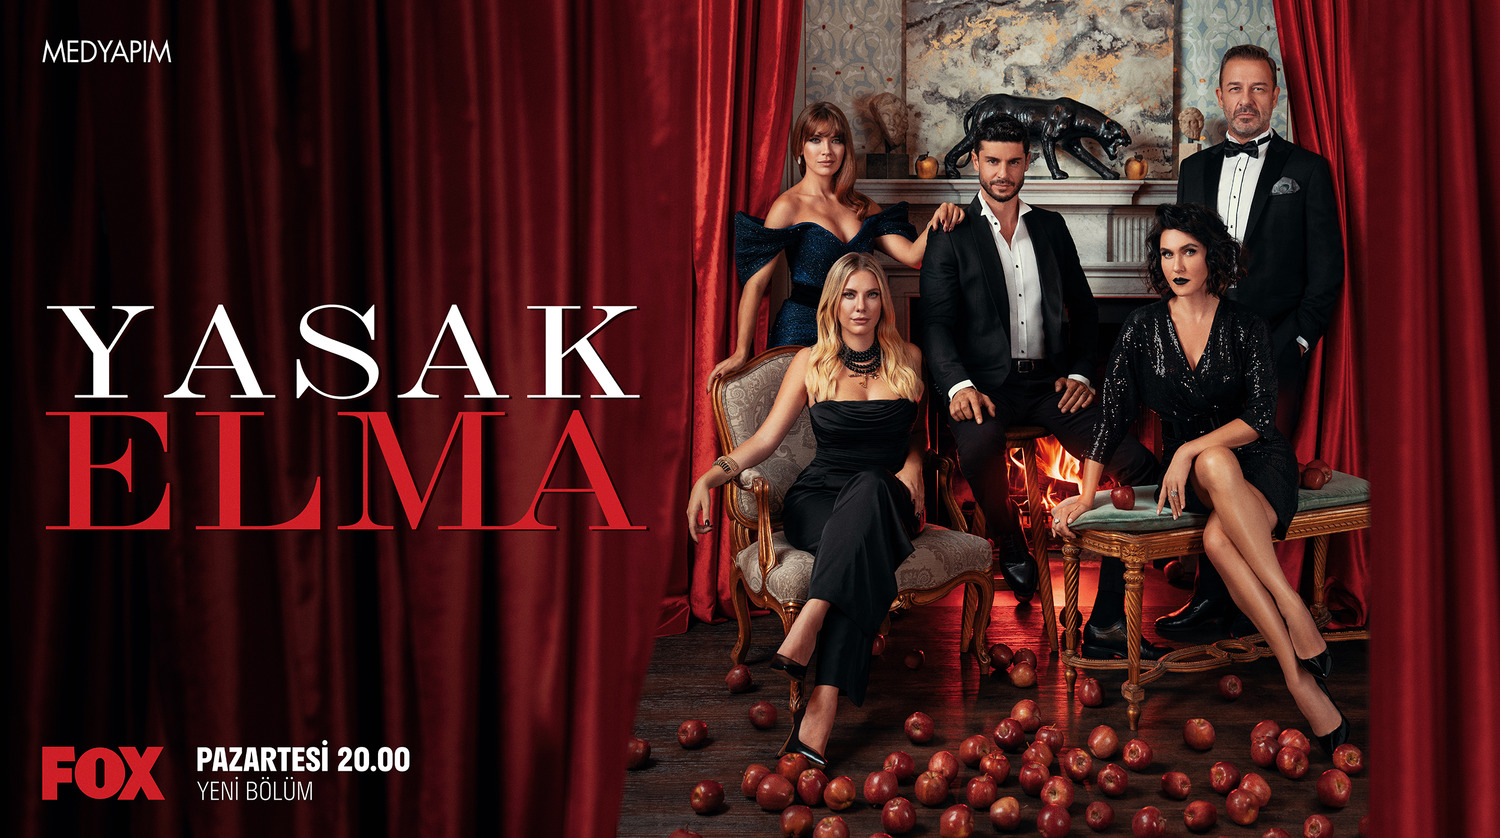 Extra Large TV Poster Image for Yasak Elma (#3 of 3)